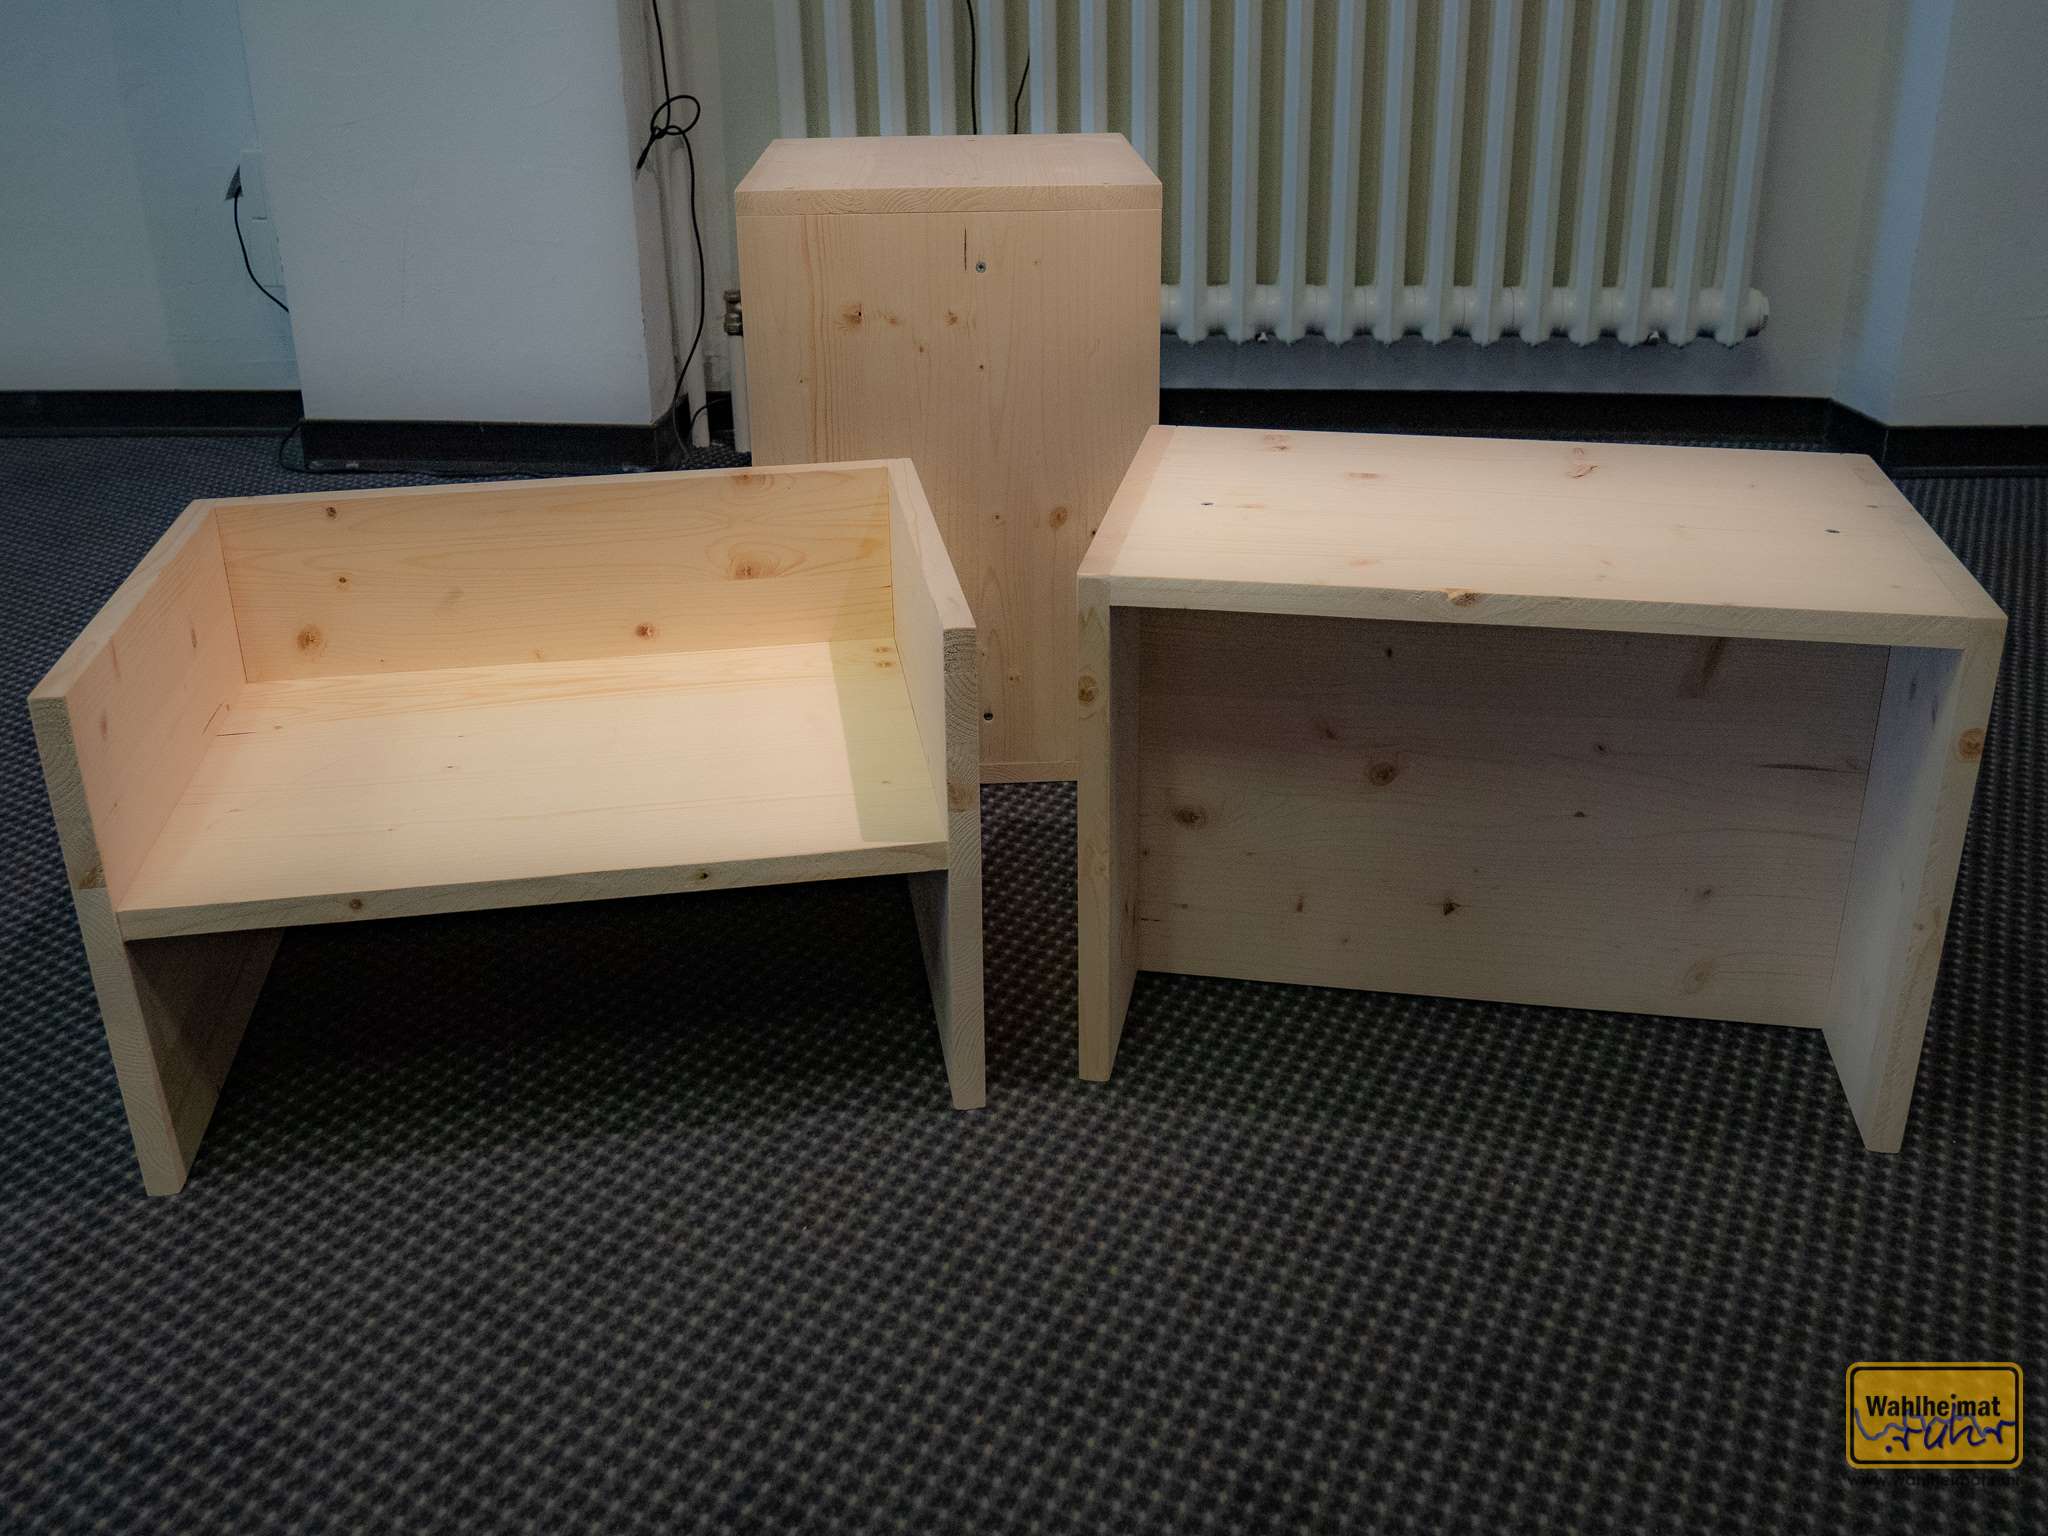 Van Bo Le-Mentzel hat diese Hartz-4-Möbel ermöglicht: Für 10€ Material, 10 Schrauben, aufgebaut in 10 Minuten ist das z.B. der "Berliner Hocker". Die Pläne kann man im Netz frei runterladen. Irgendwie auch (spätes) Bauhaus.